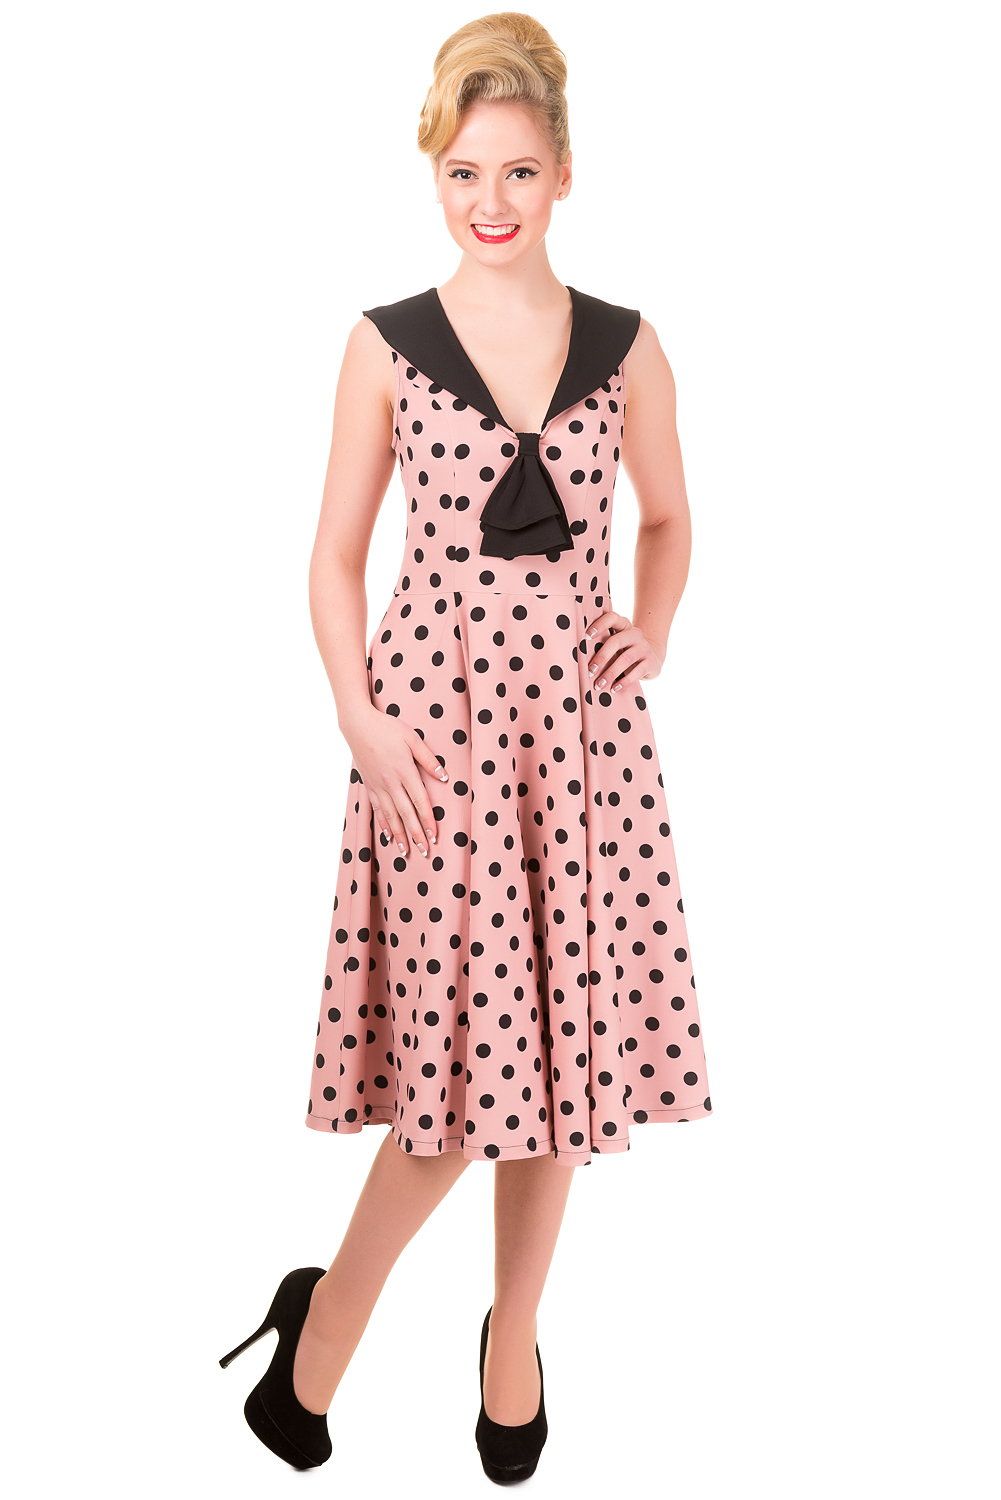 Banned Vintage Pink Polka Dot Rival Dress Rockabilly Dresse